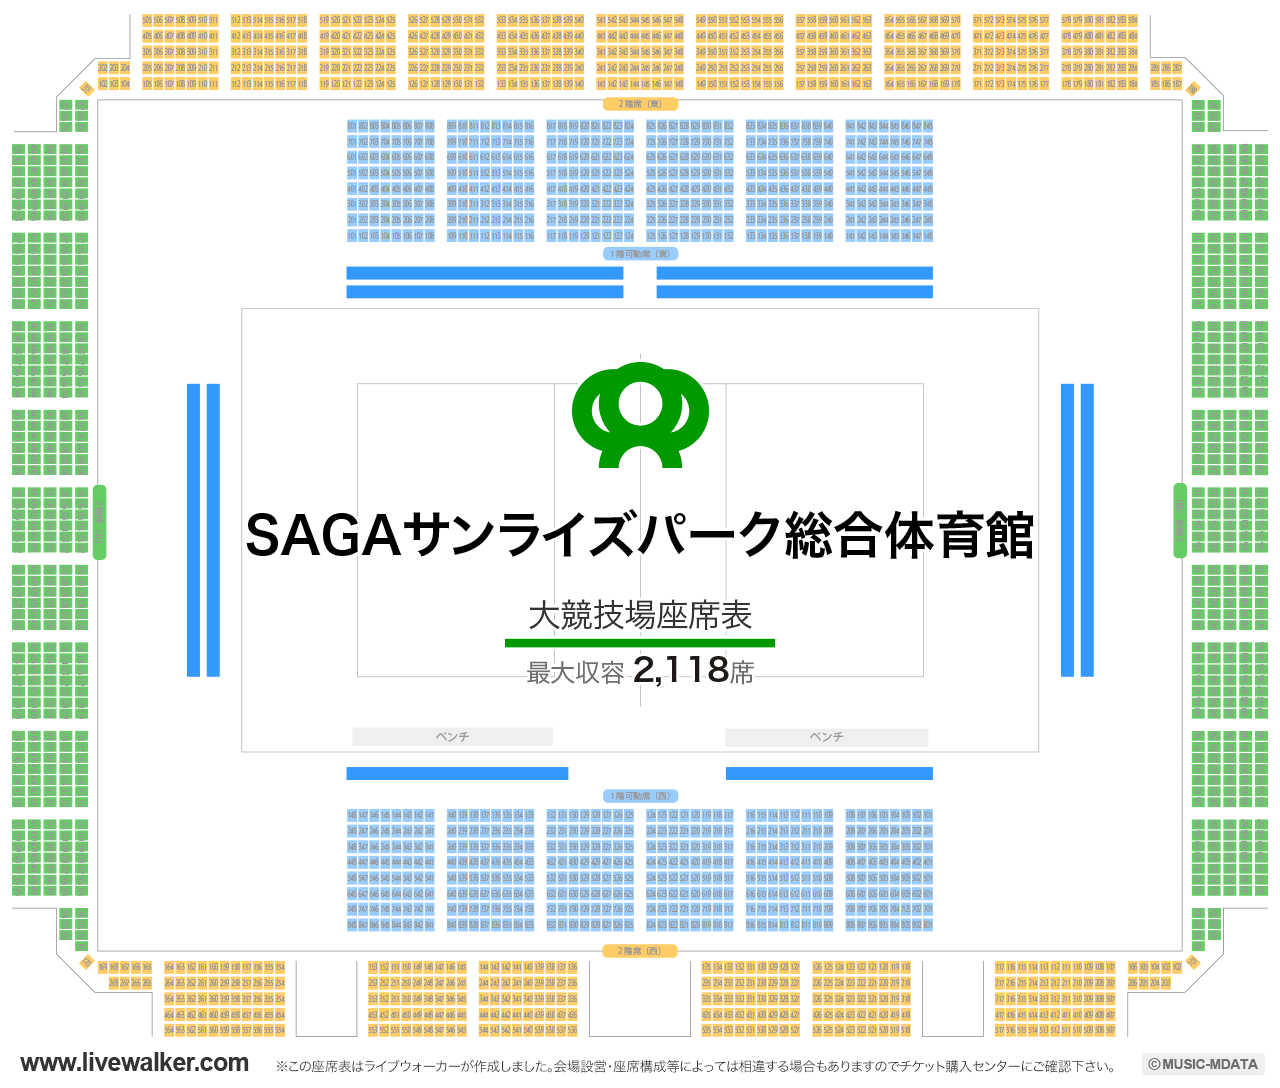 SAGAプラザ（総合体育館）大競技場の座席表